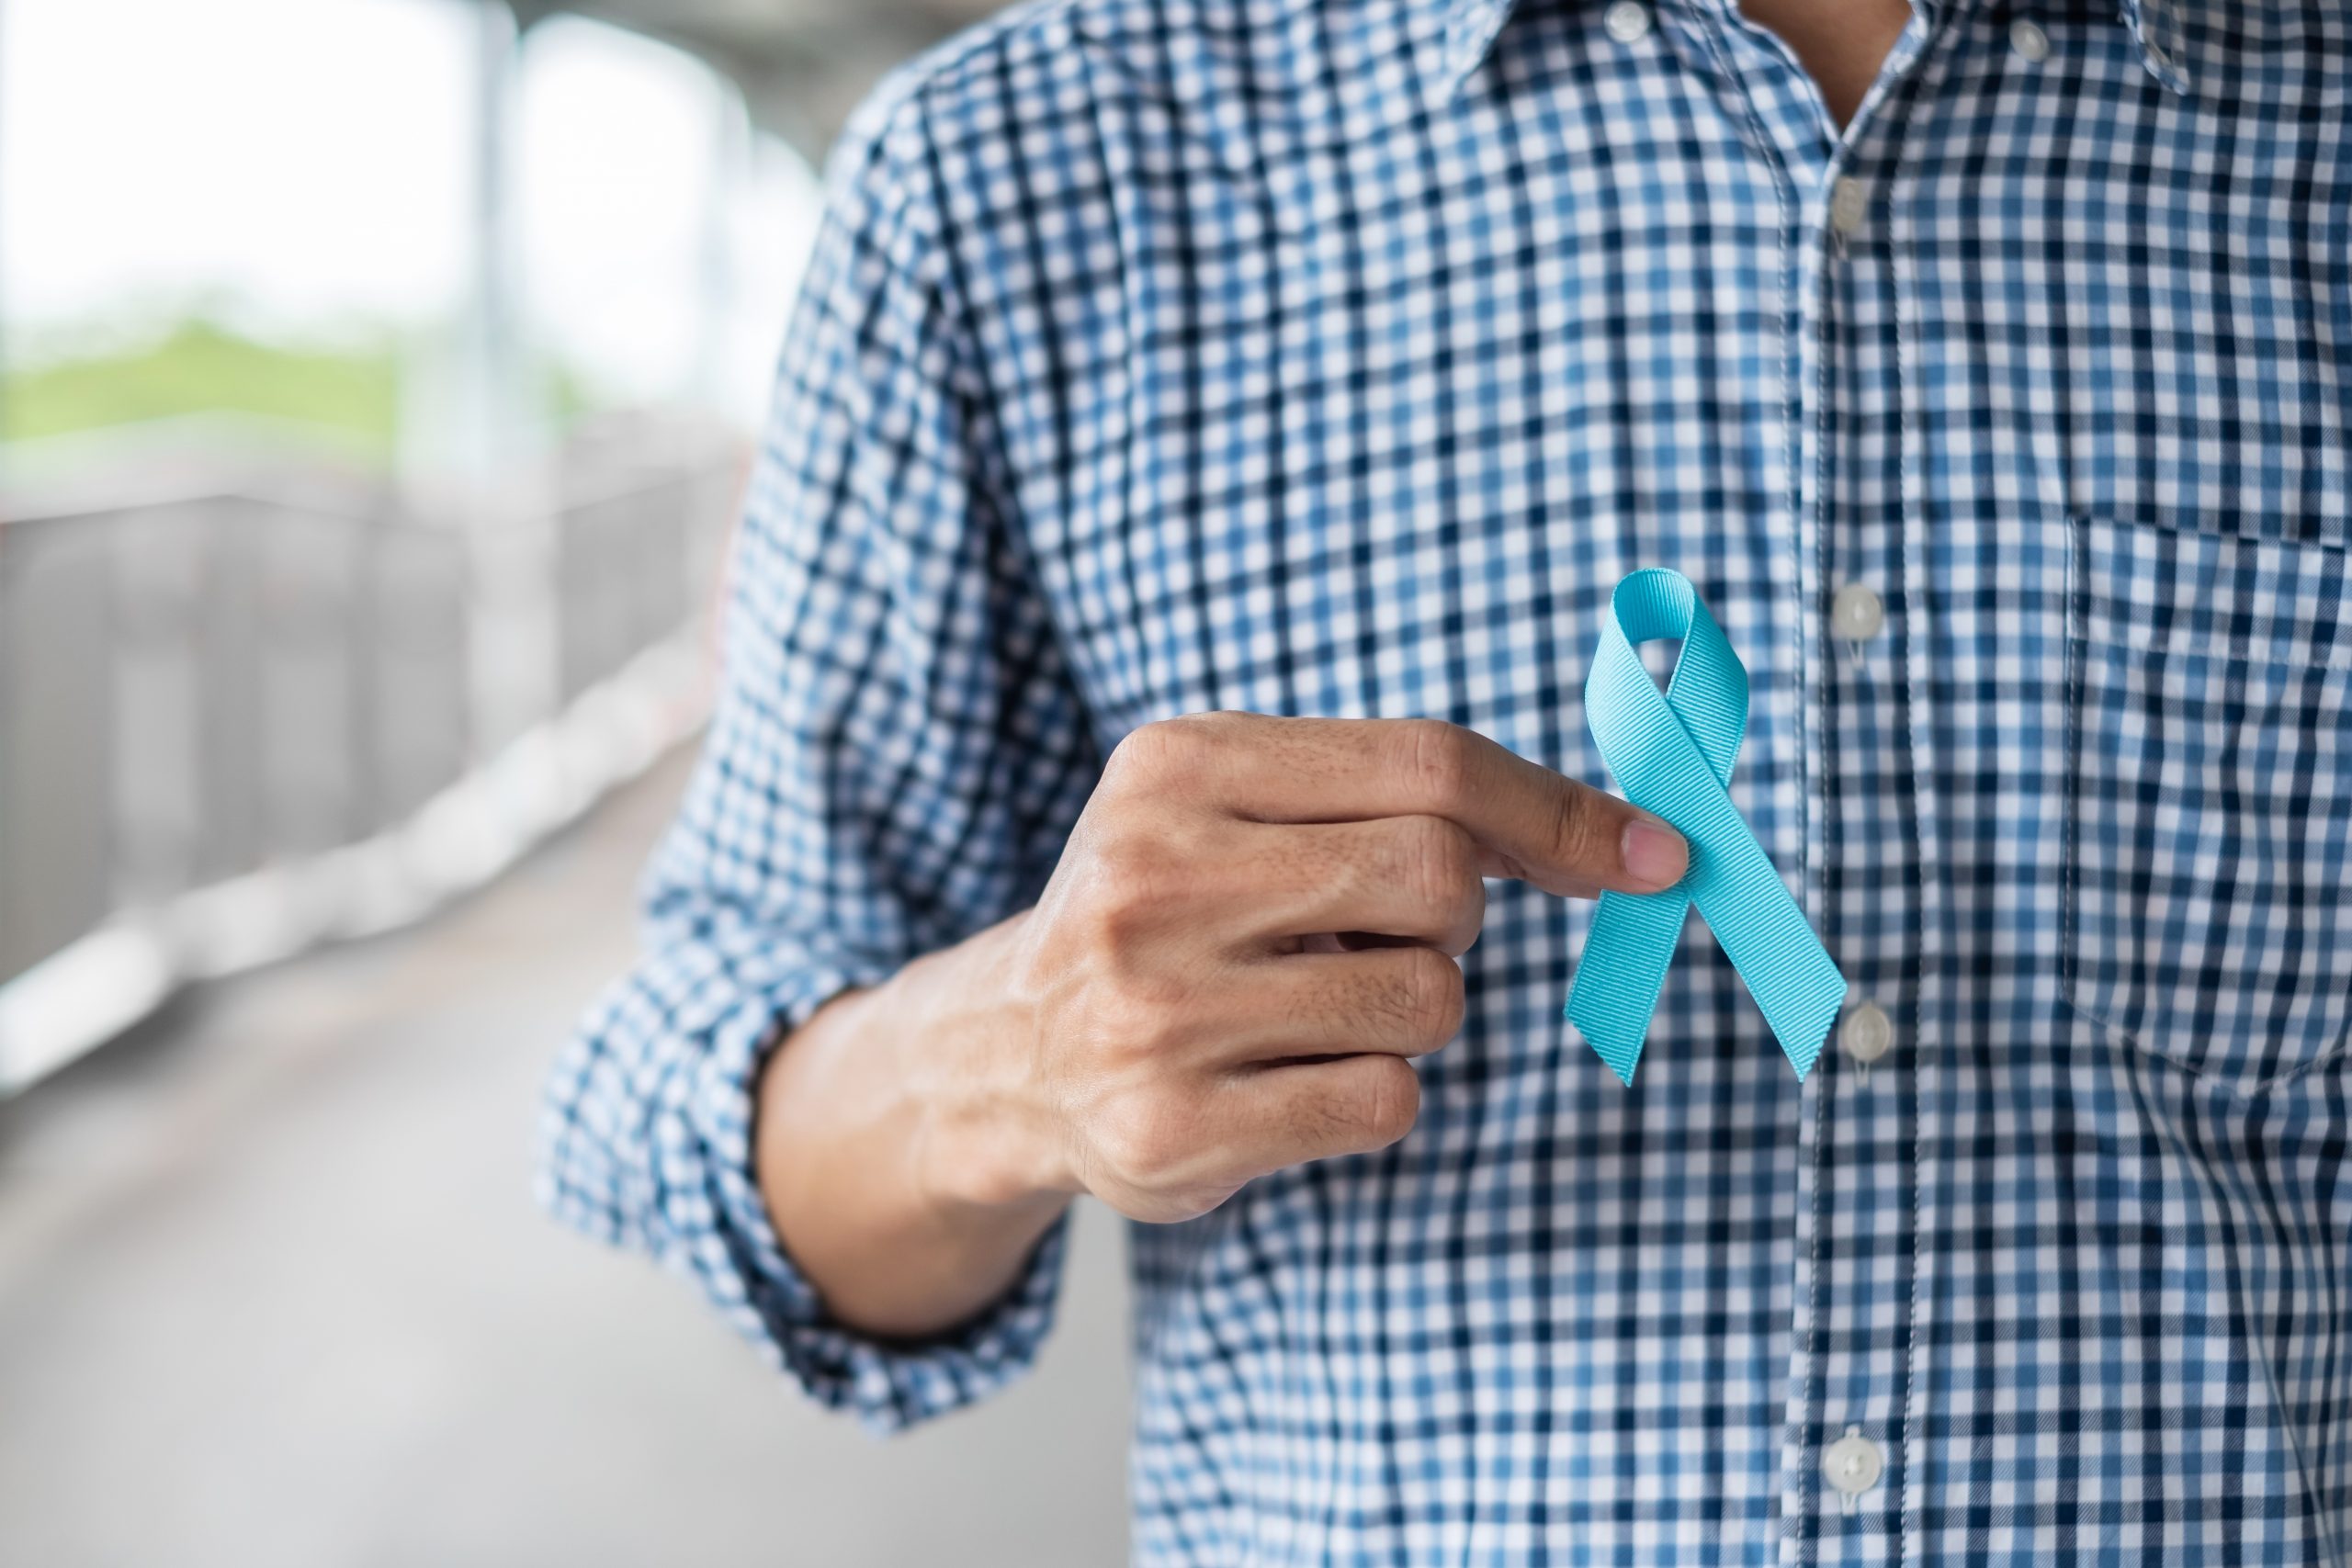 Câncer de Próstata – Homens deixaram de realizar exames preventivos na pandemia